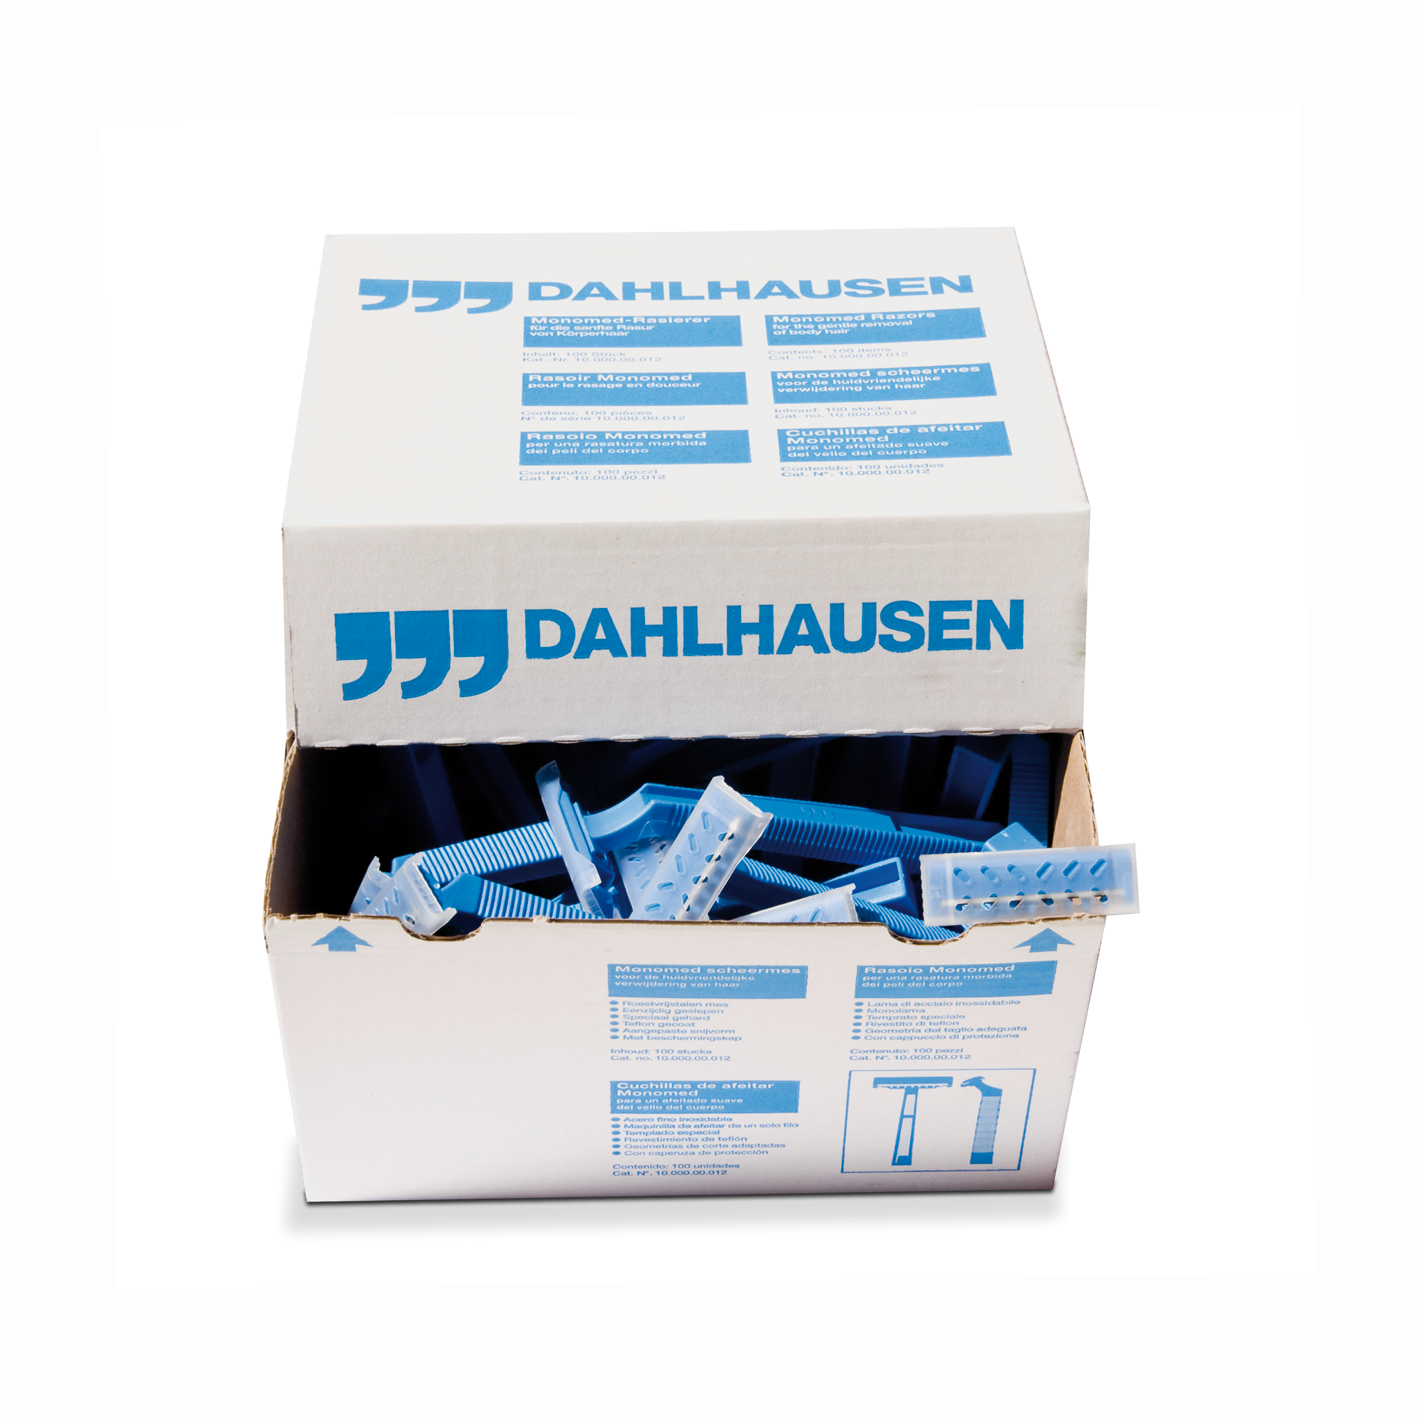 Rasuradora Dahlhausen desechable. Caja de 100 unidades.